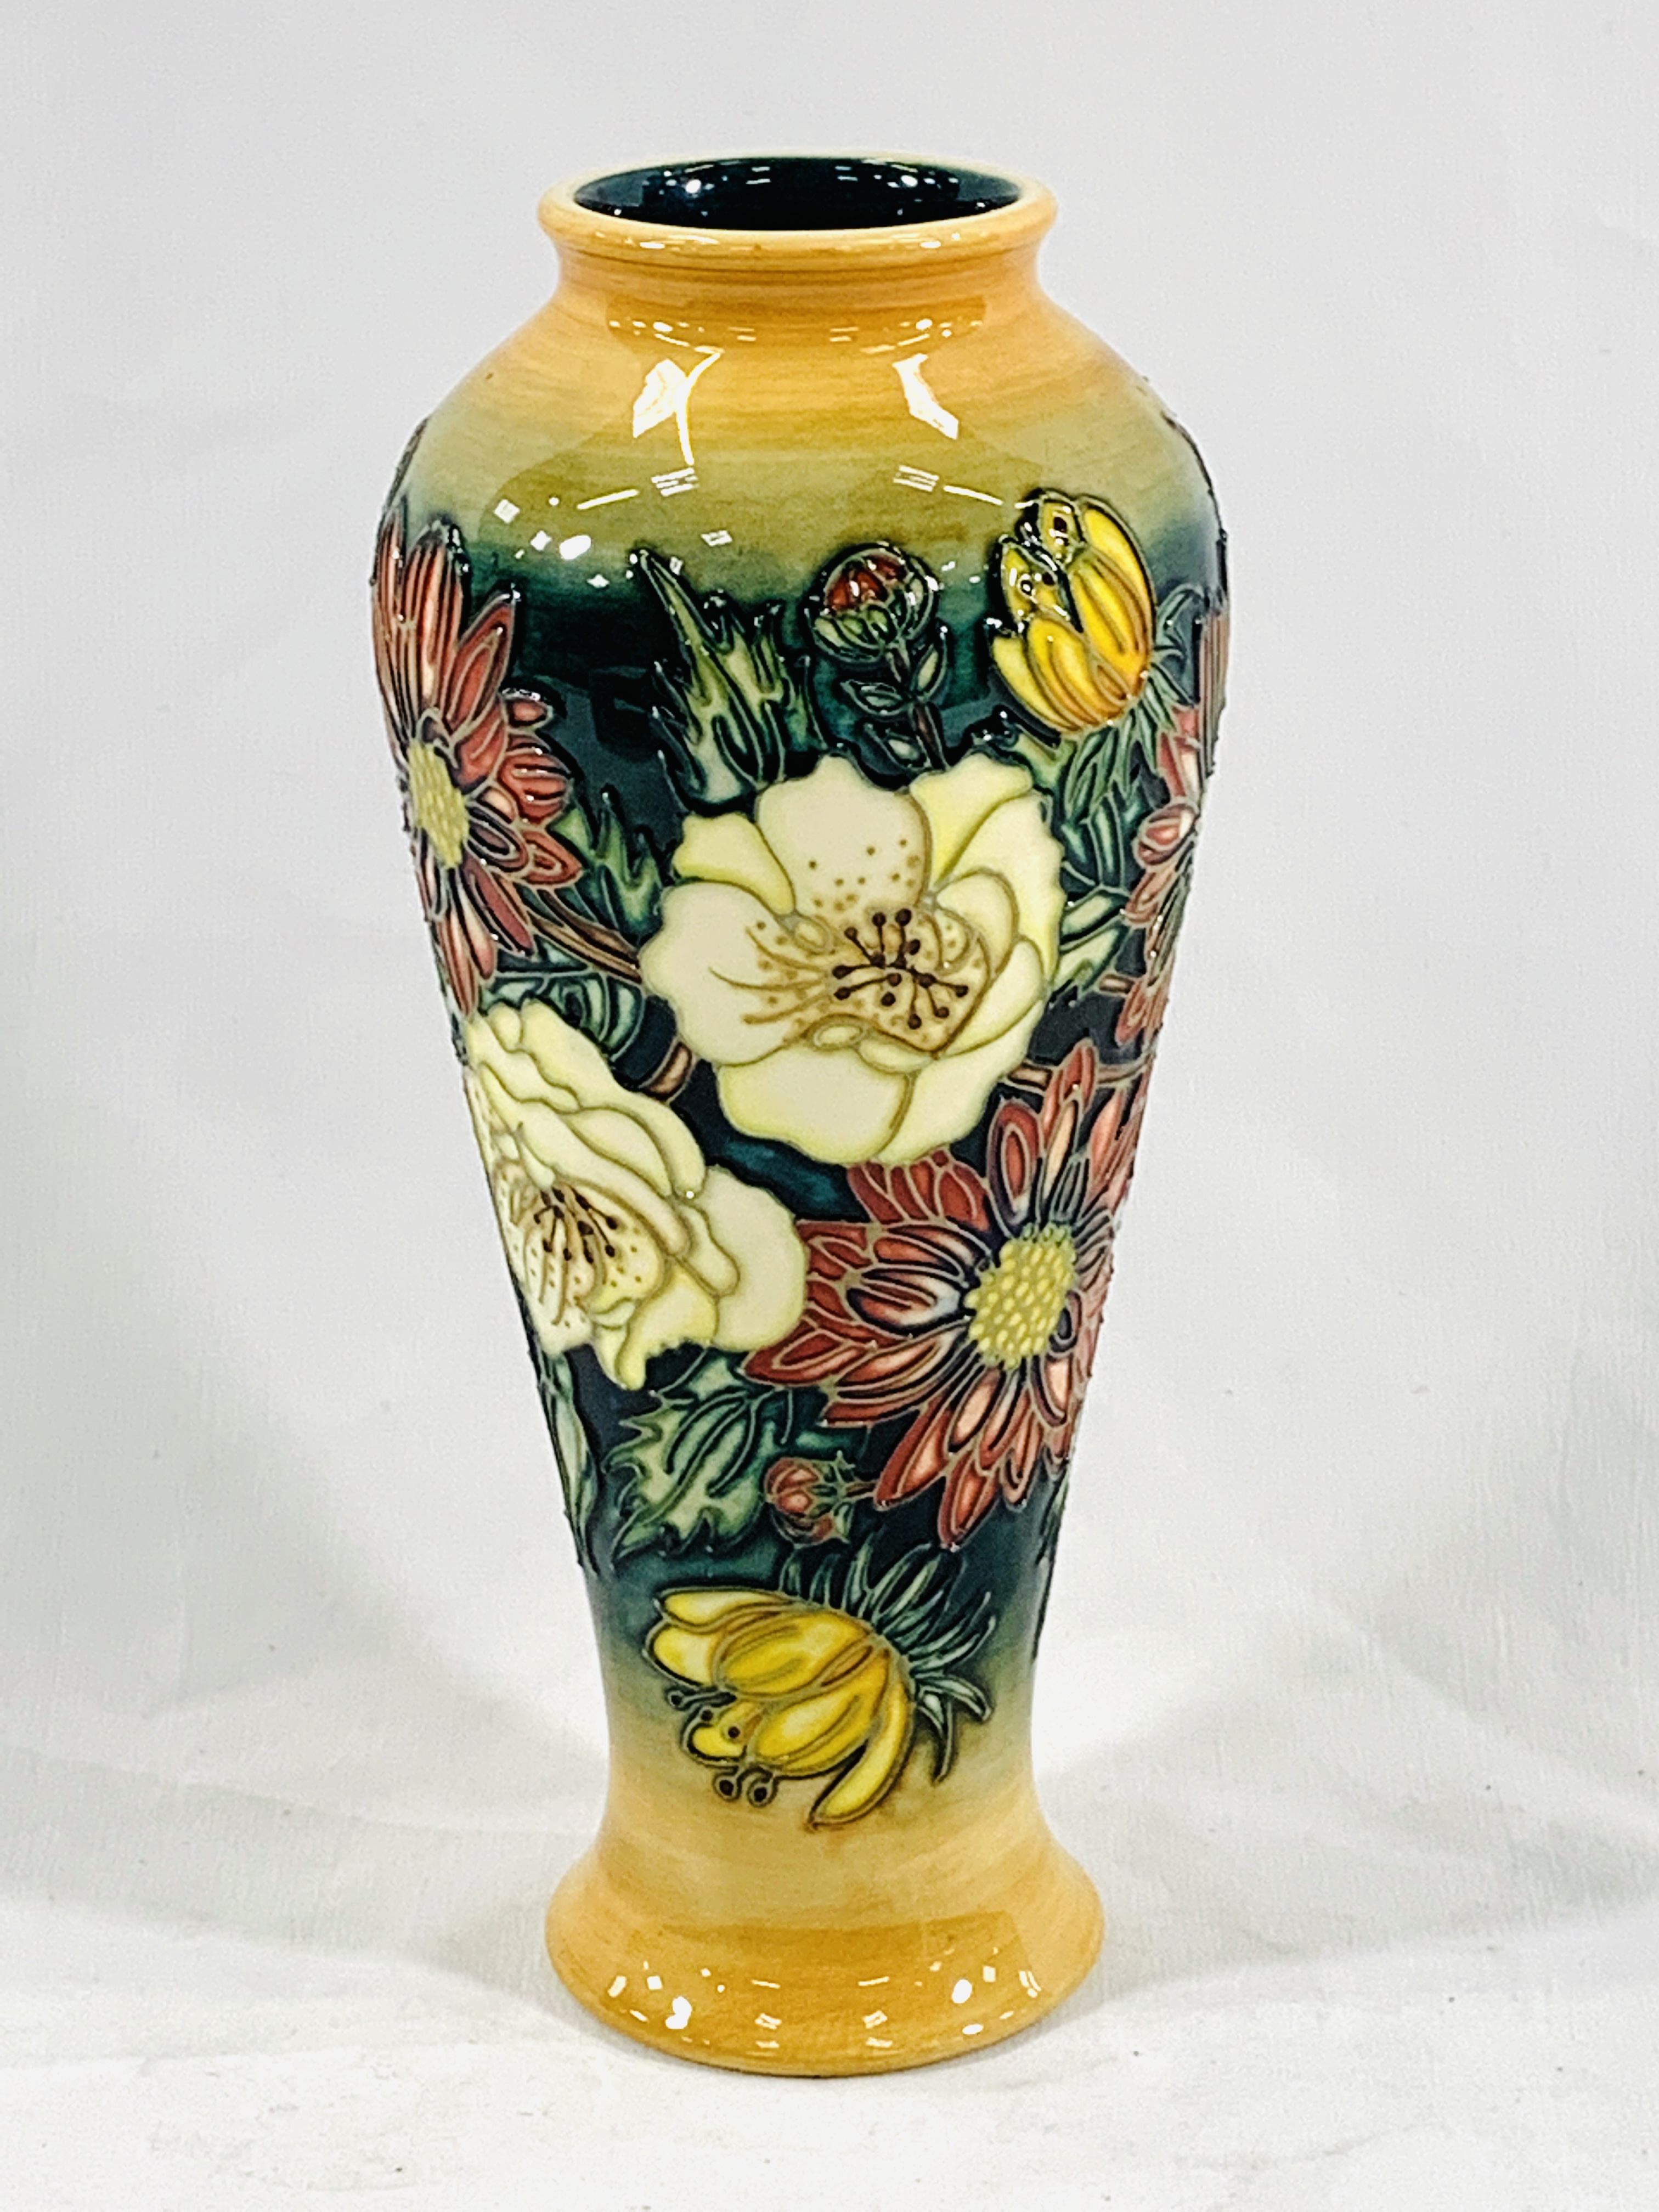 Boxed Moorcroft collectors club vase